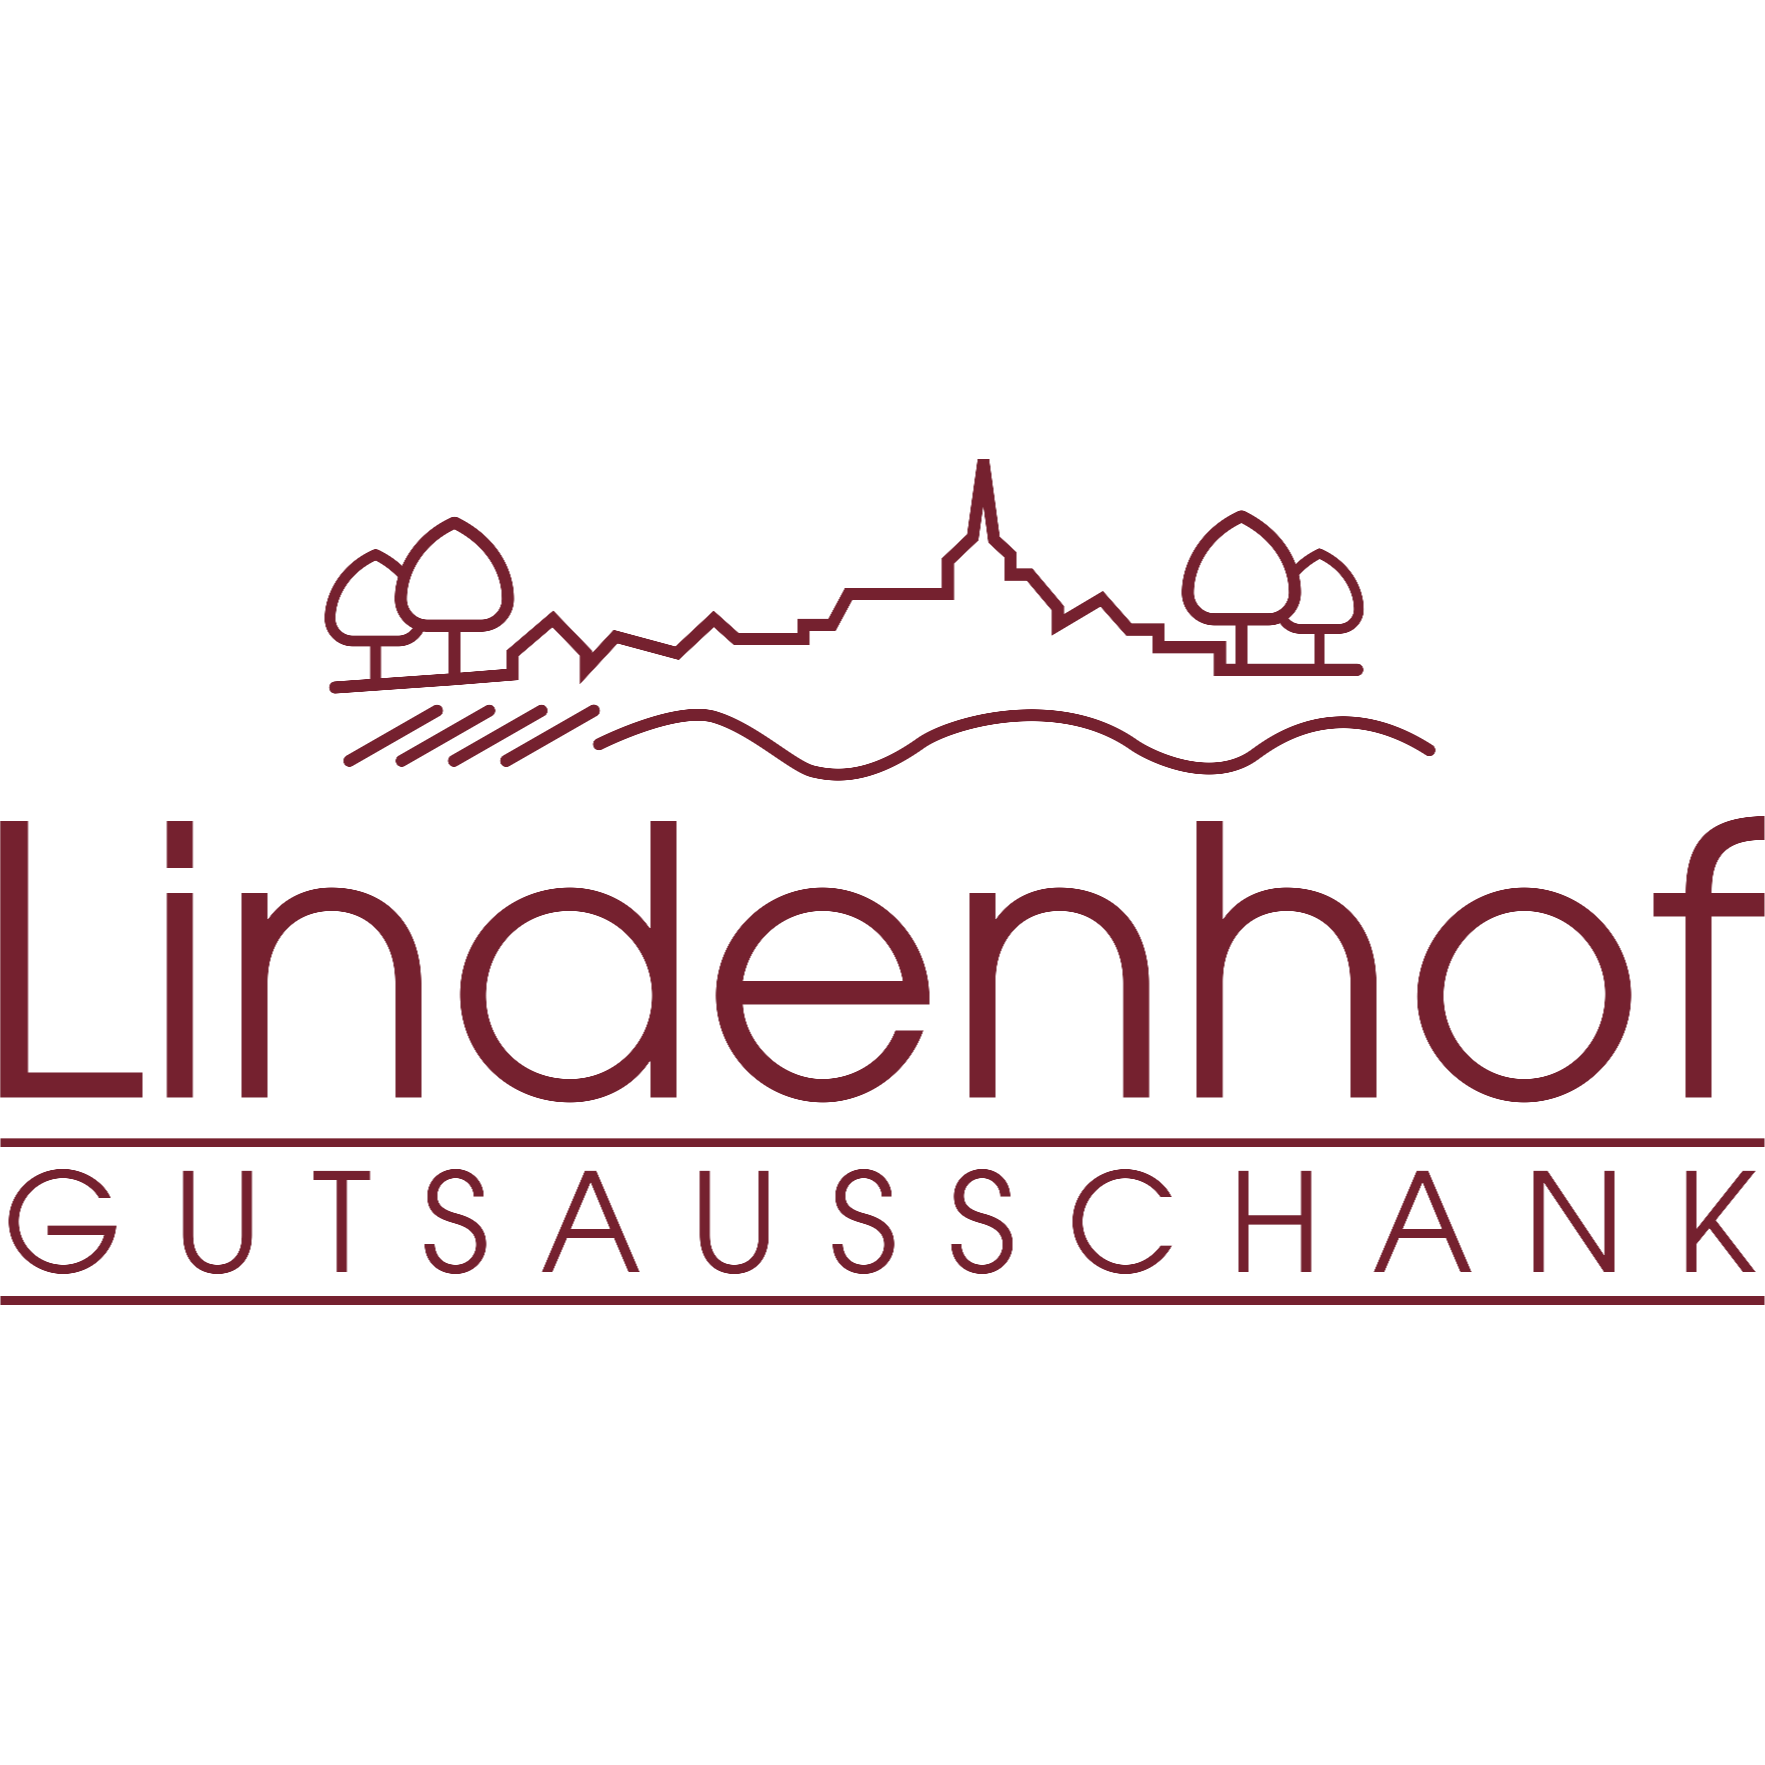 Gutsausschank Lindenhof Alfons Petry Logo